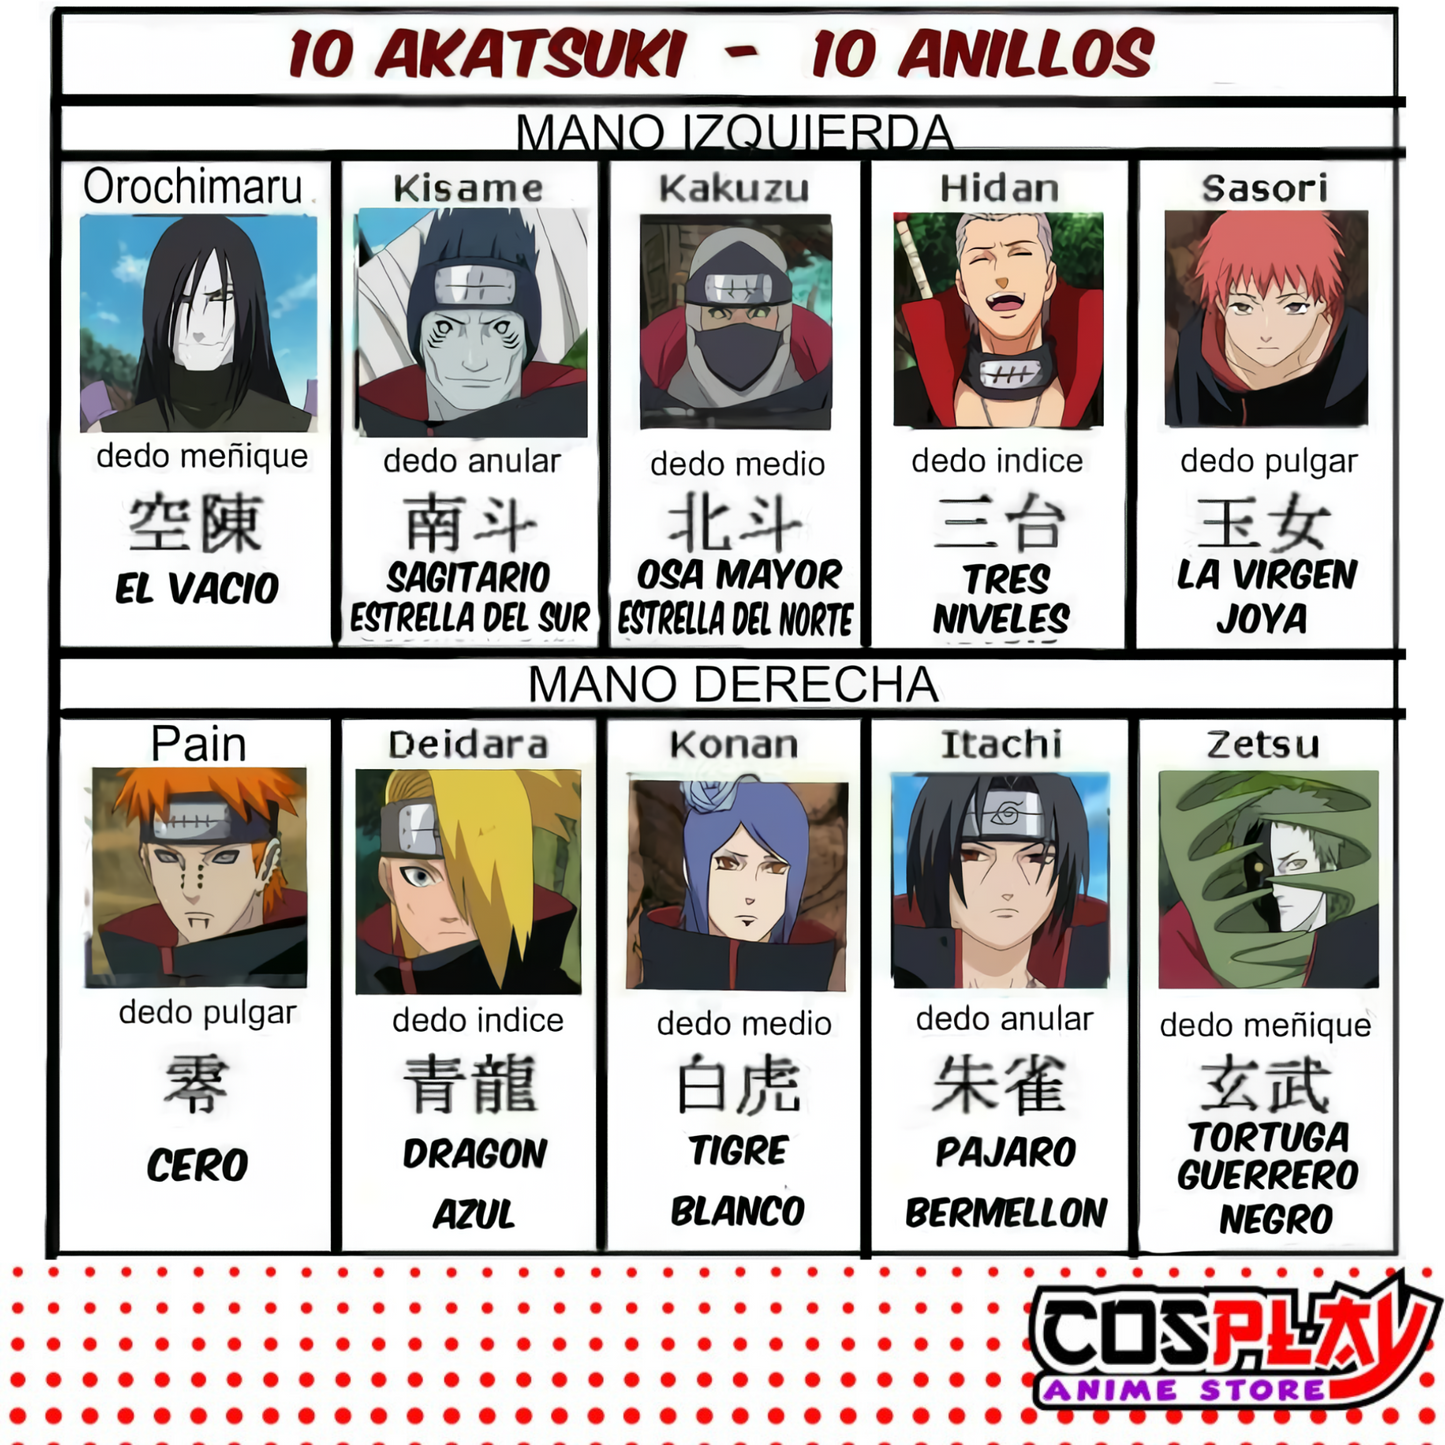 Anillo Akatsuki  Orochimaru - Naruto Metal Dorado